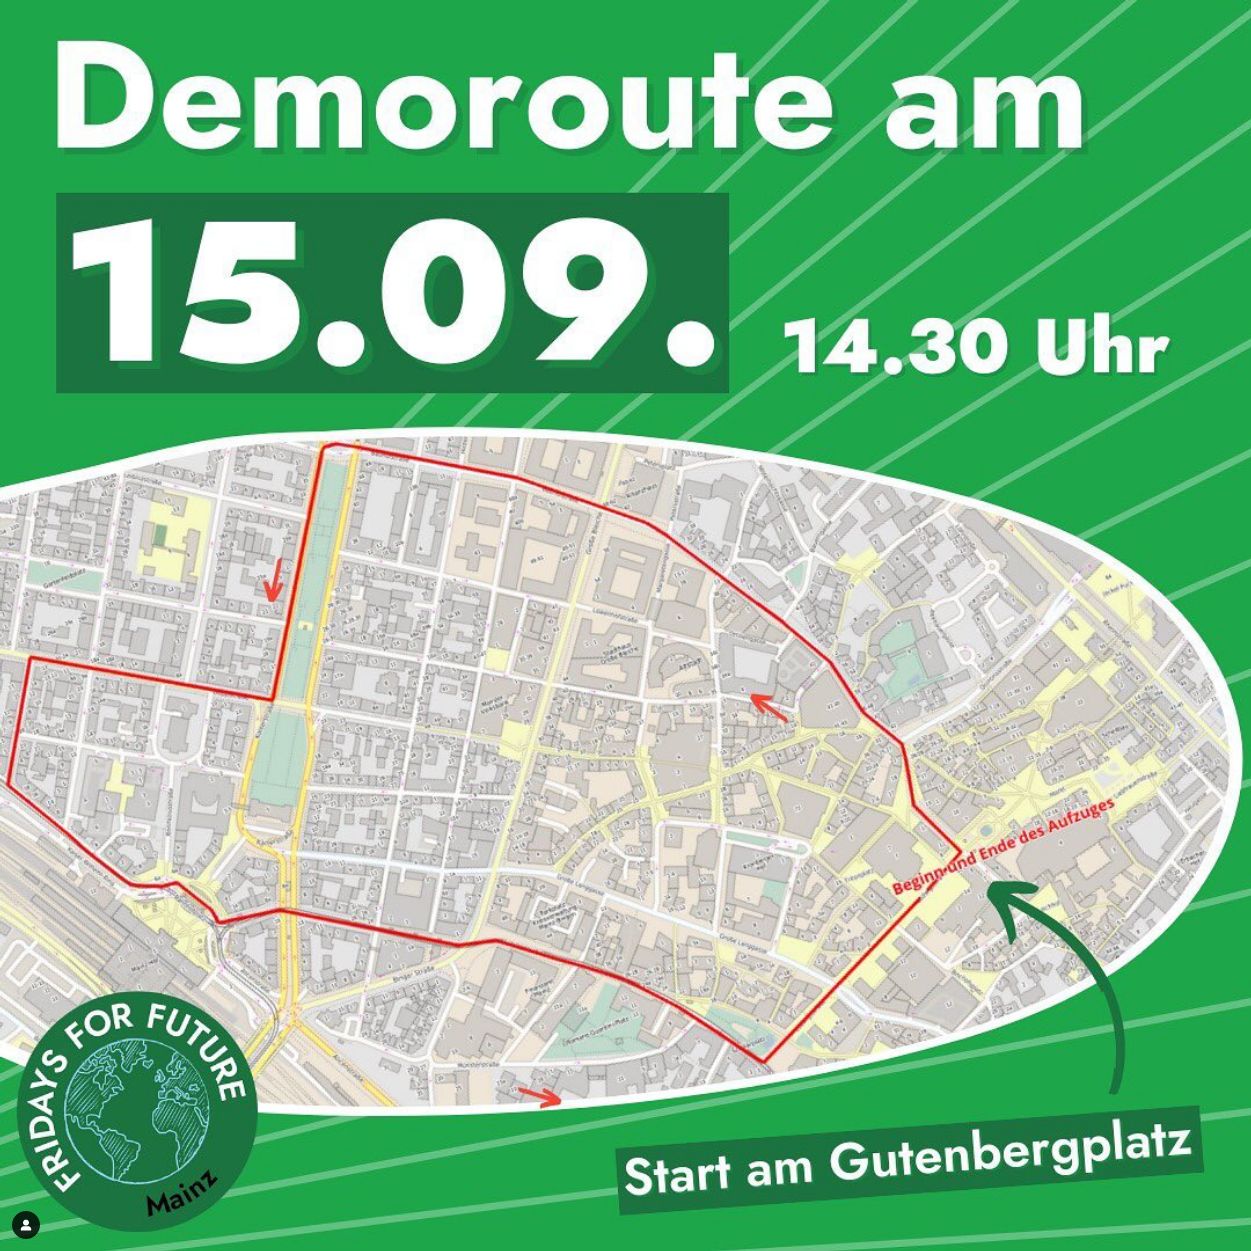 Bild: Demoroute am 15.09. 14:30 Uhr Start am Gutenbergplatz Mainz